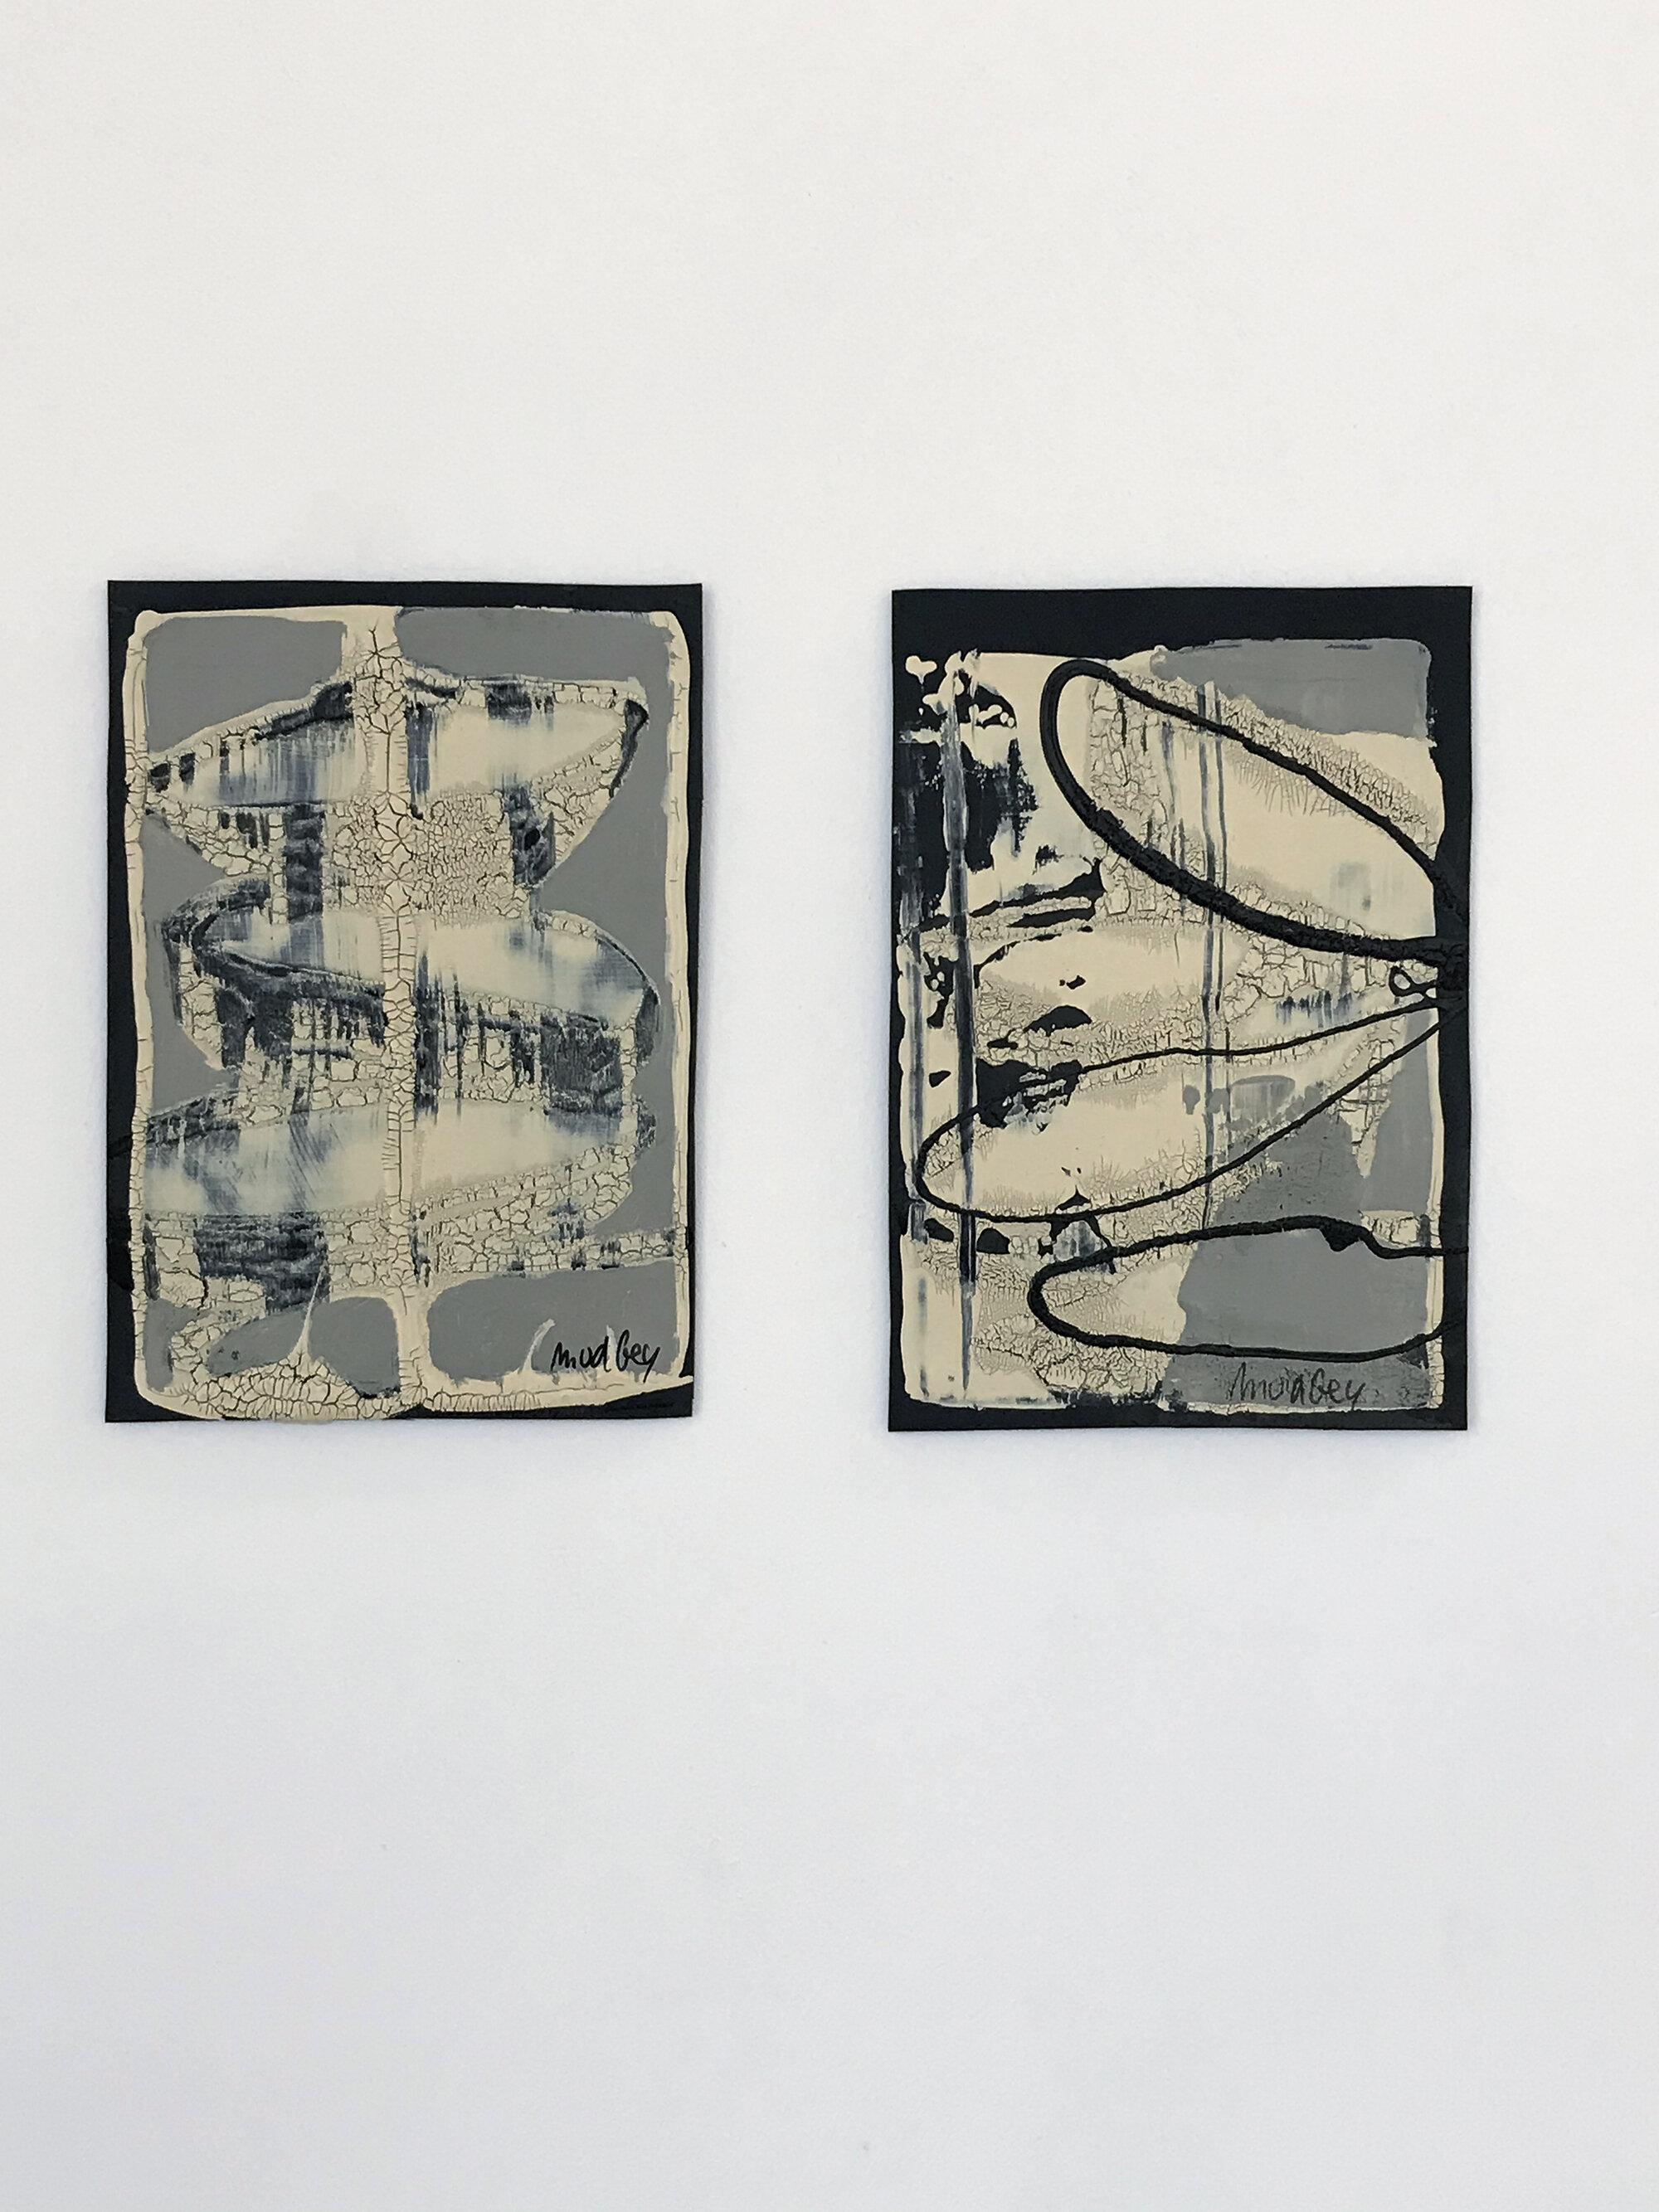 Martina Van De Gey, Untitled pieces, 2020, 15x10cm, acrylic on rubber.